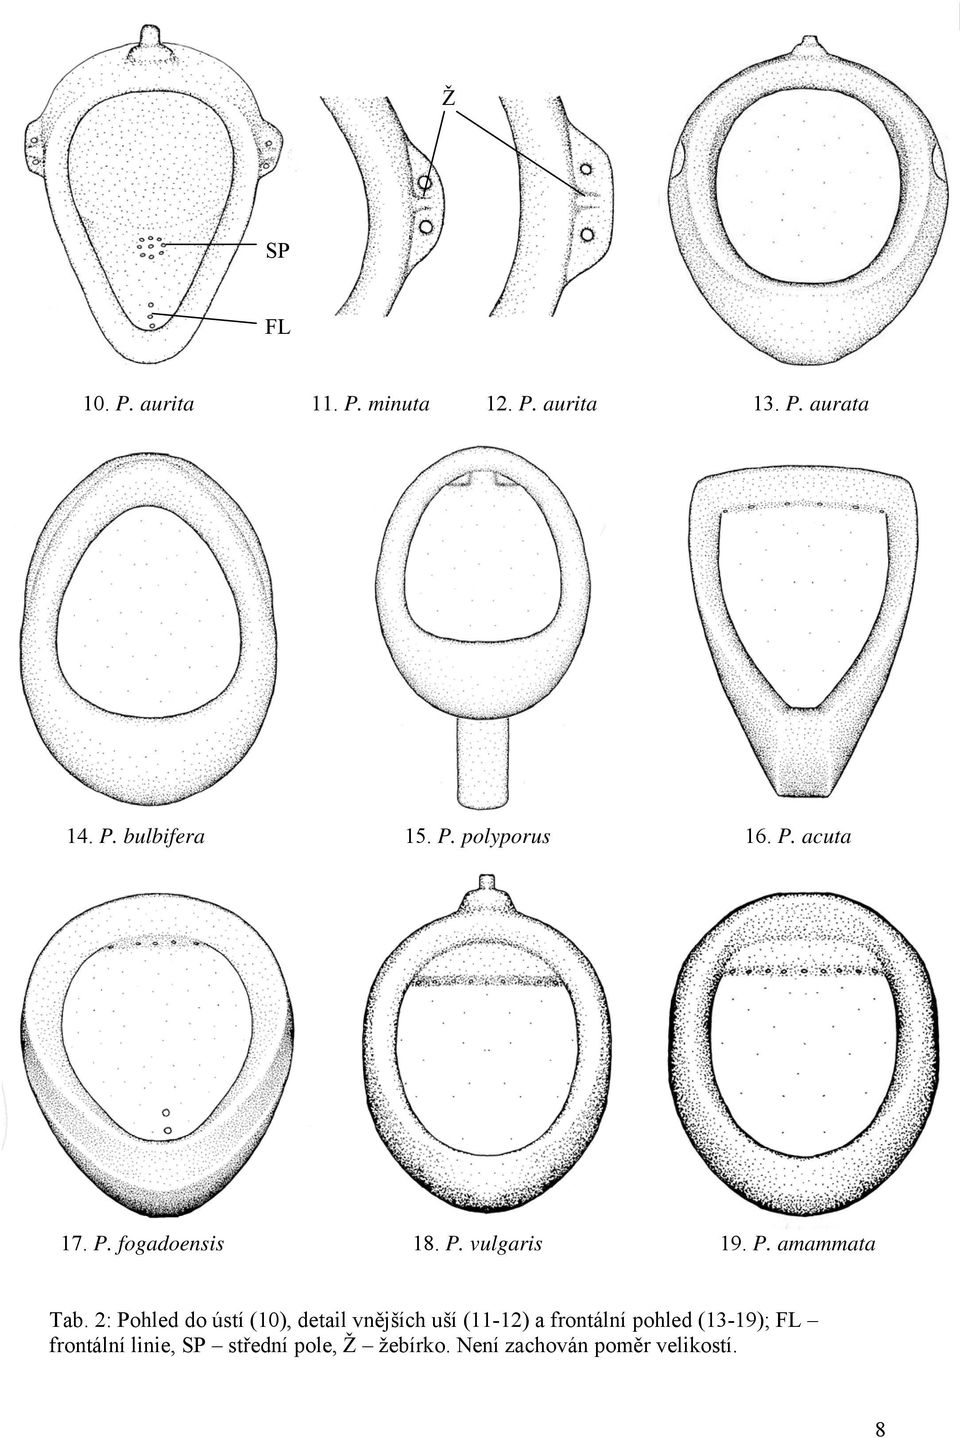 2: Pohled do ústí (10), detail vnějších uší (11-12) a frontální pohled (13-19);